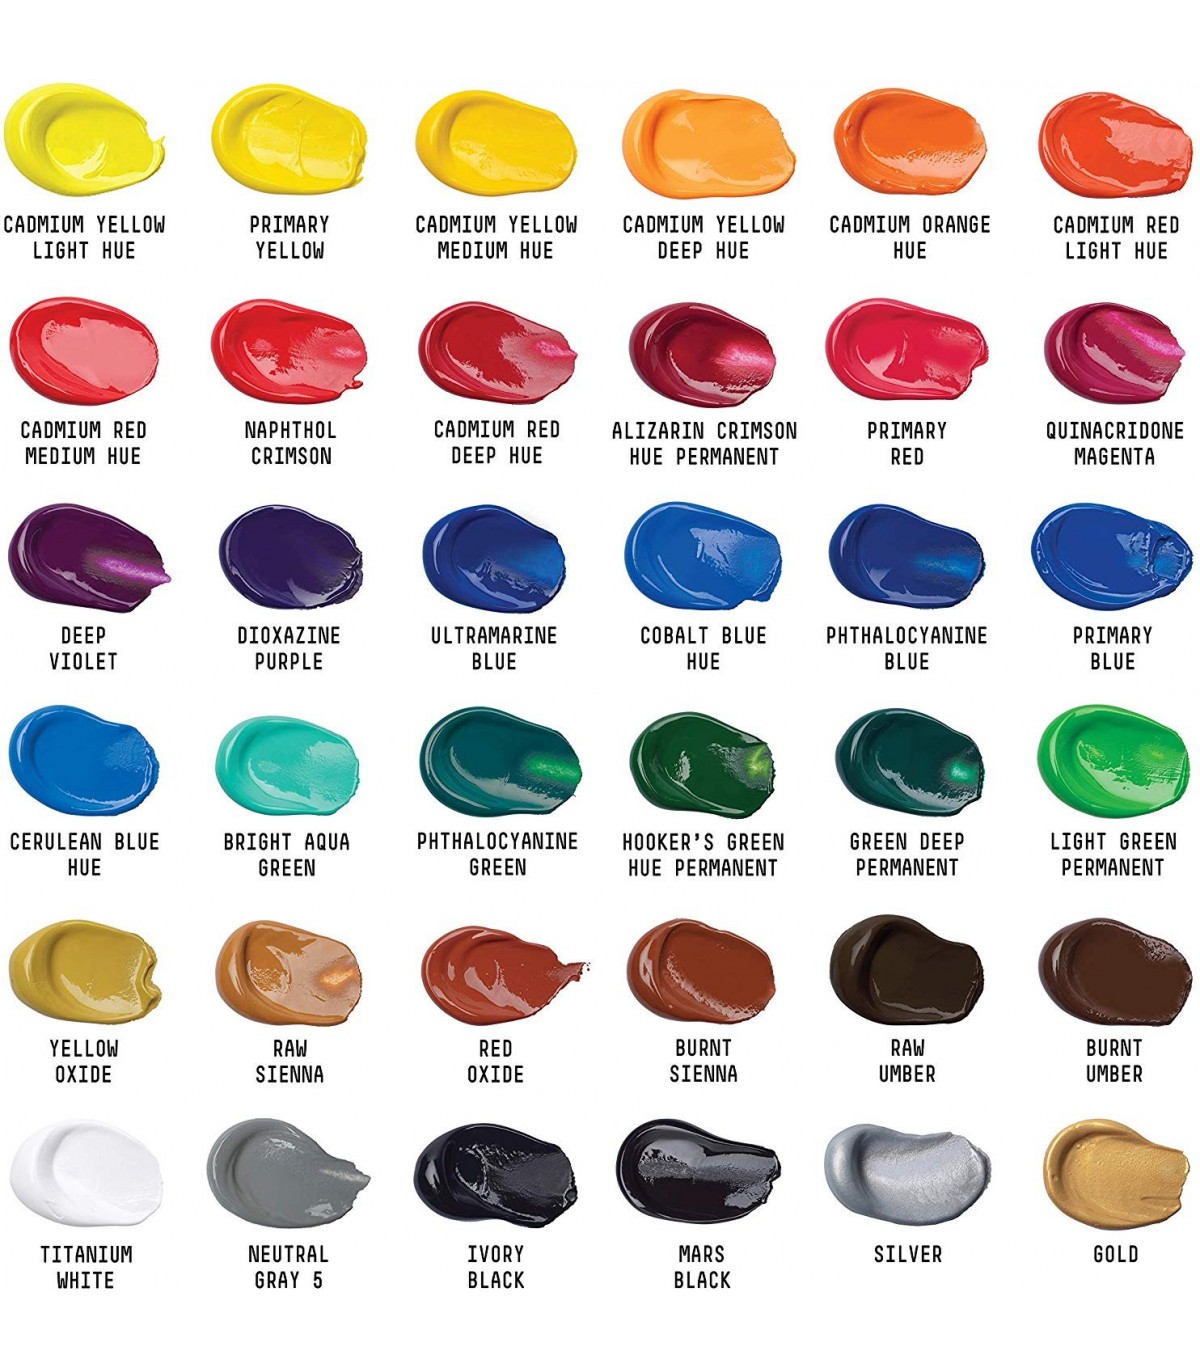 Arterox Set de Pintura Acrilica para Artistas. Kit de Pinturas Acrílicas  disponible en 12 y 24 colores diferentes. Pinturas Acrilicas Set  Multicolor.